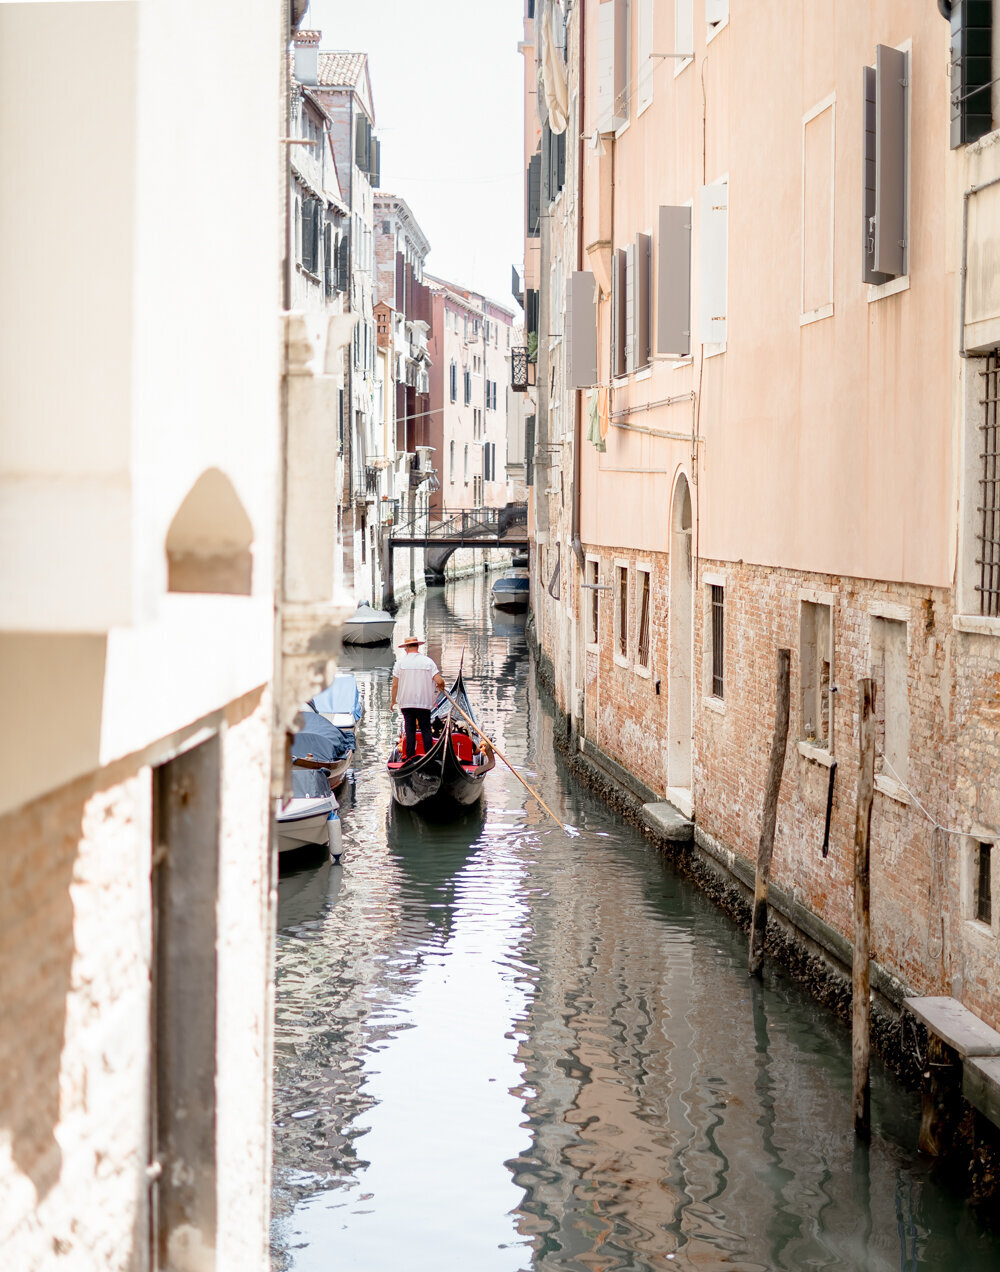 Gondola in Venece streets